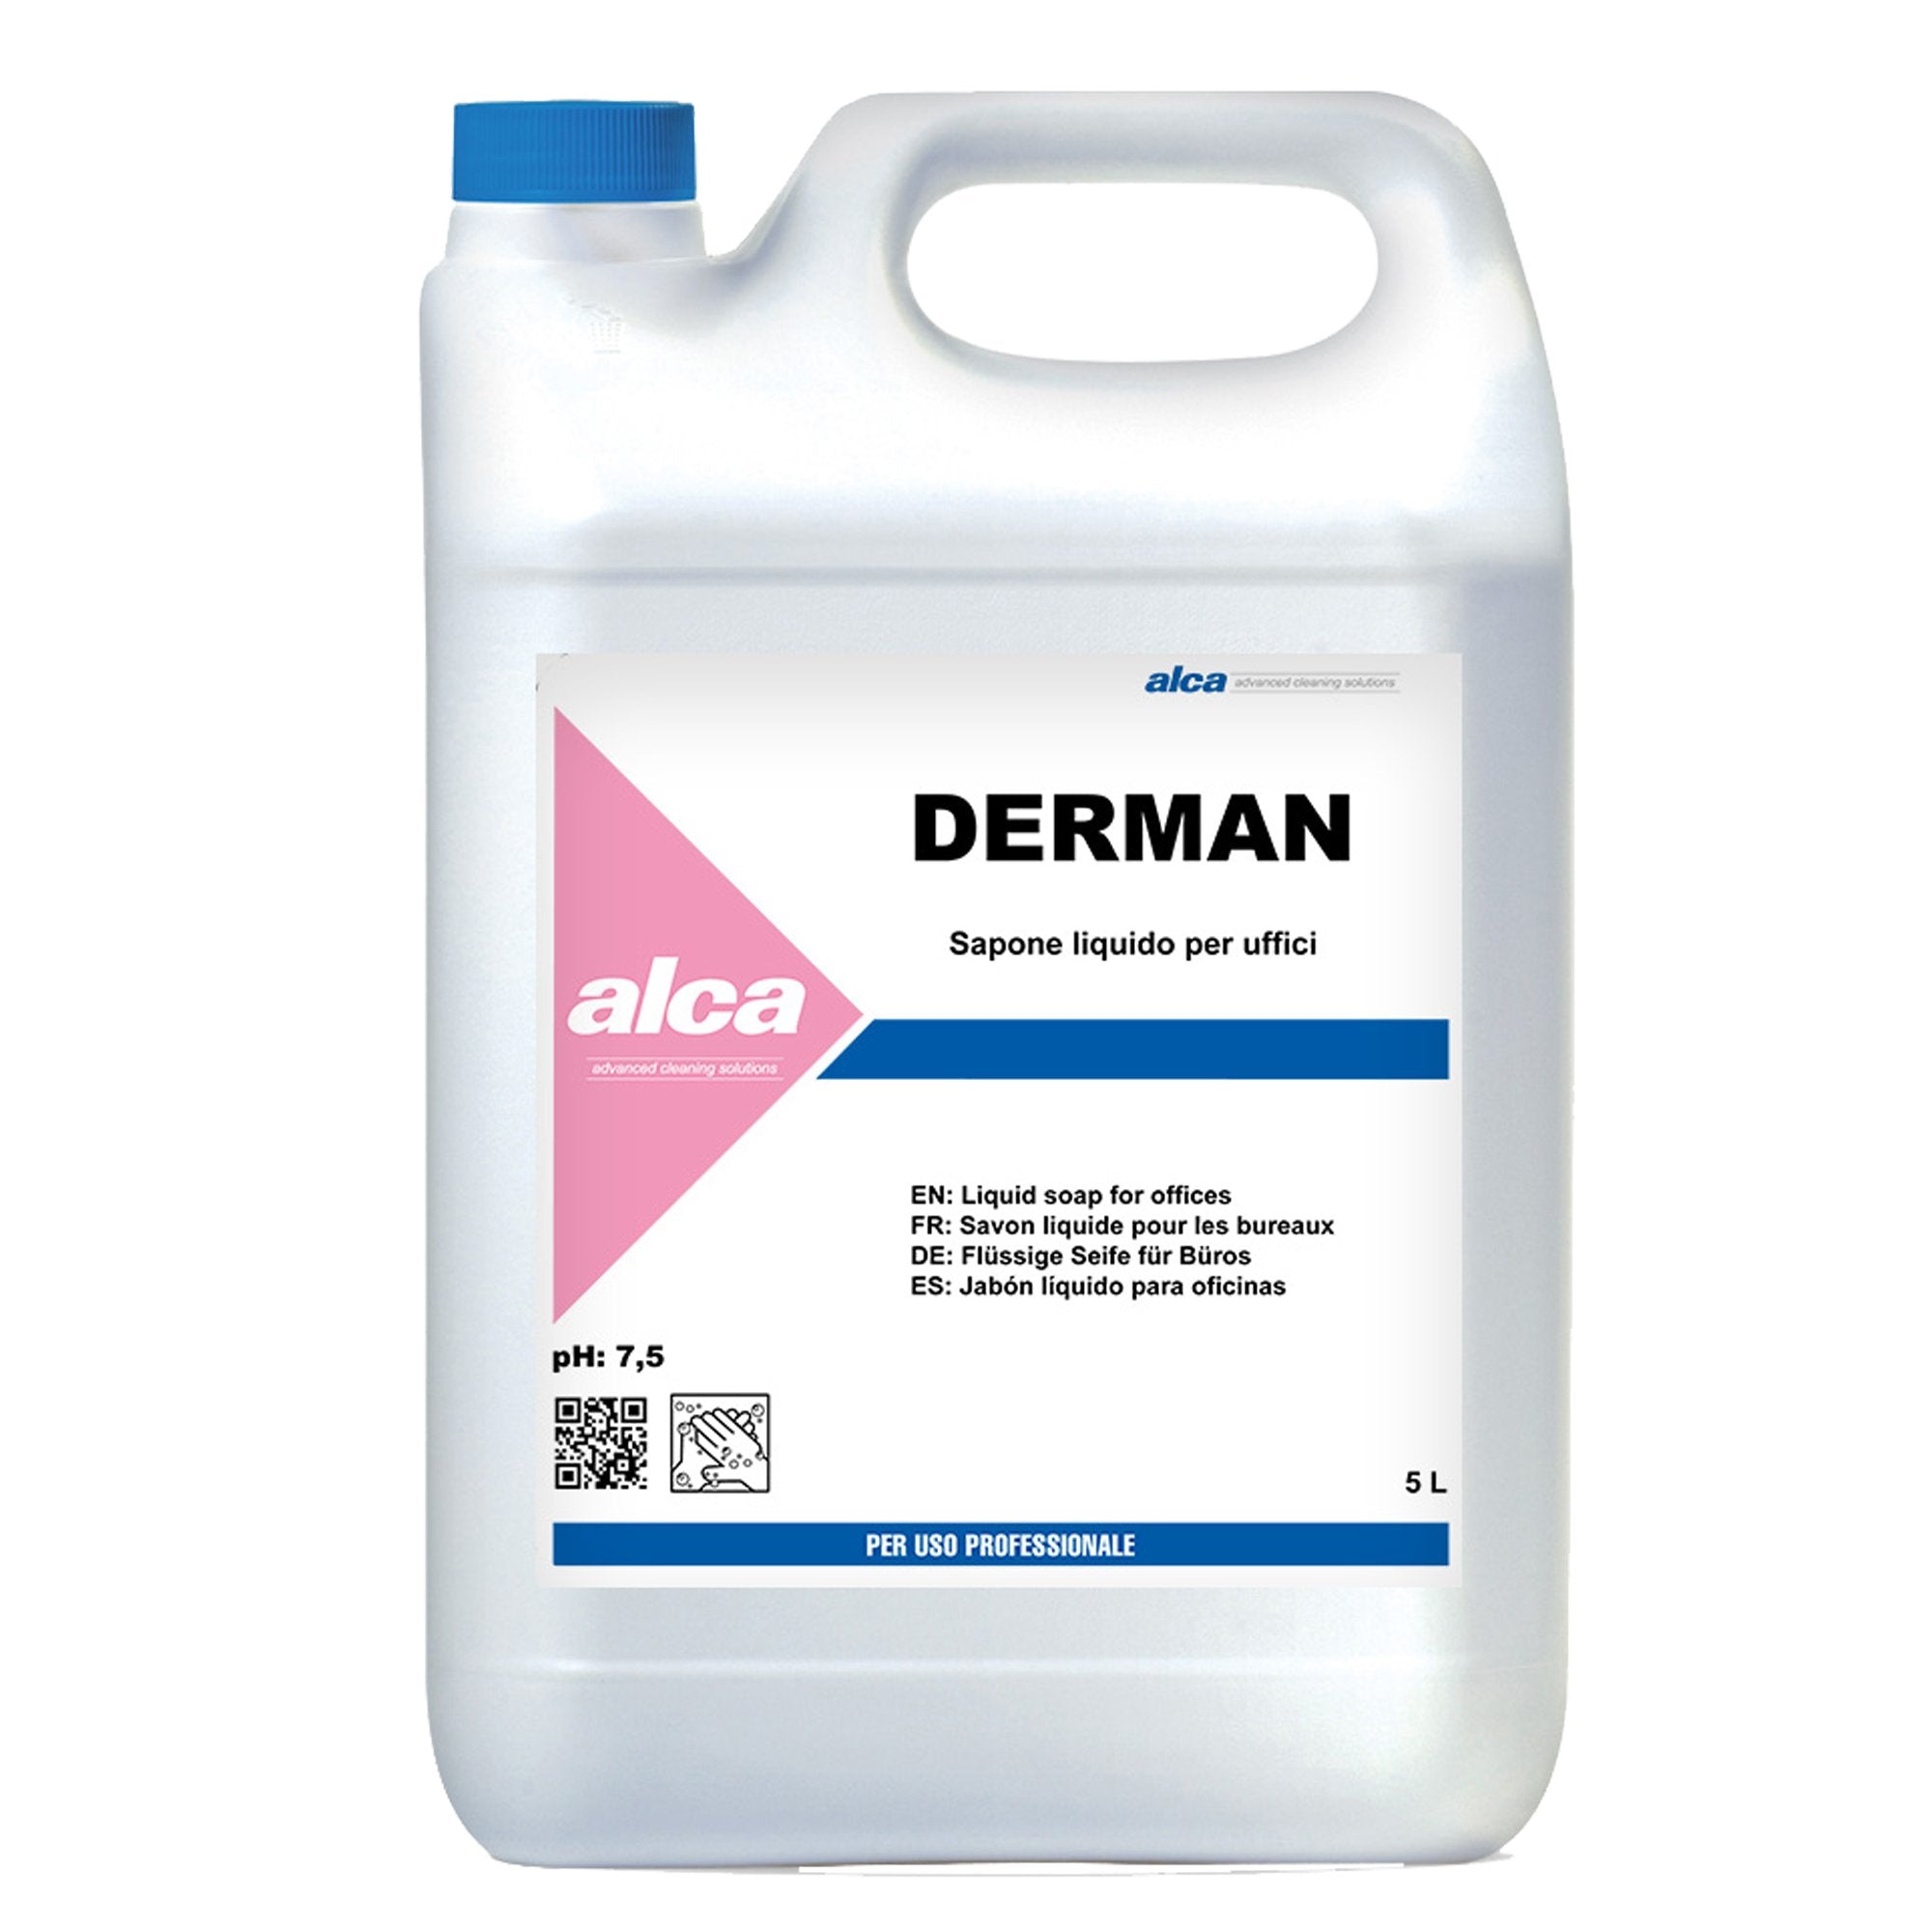 alca-sapone-liquido-tanica-5lt-derman